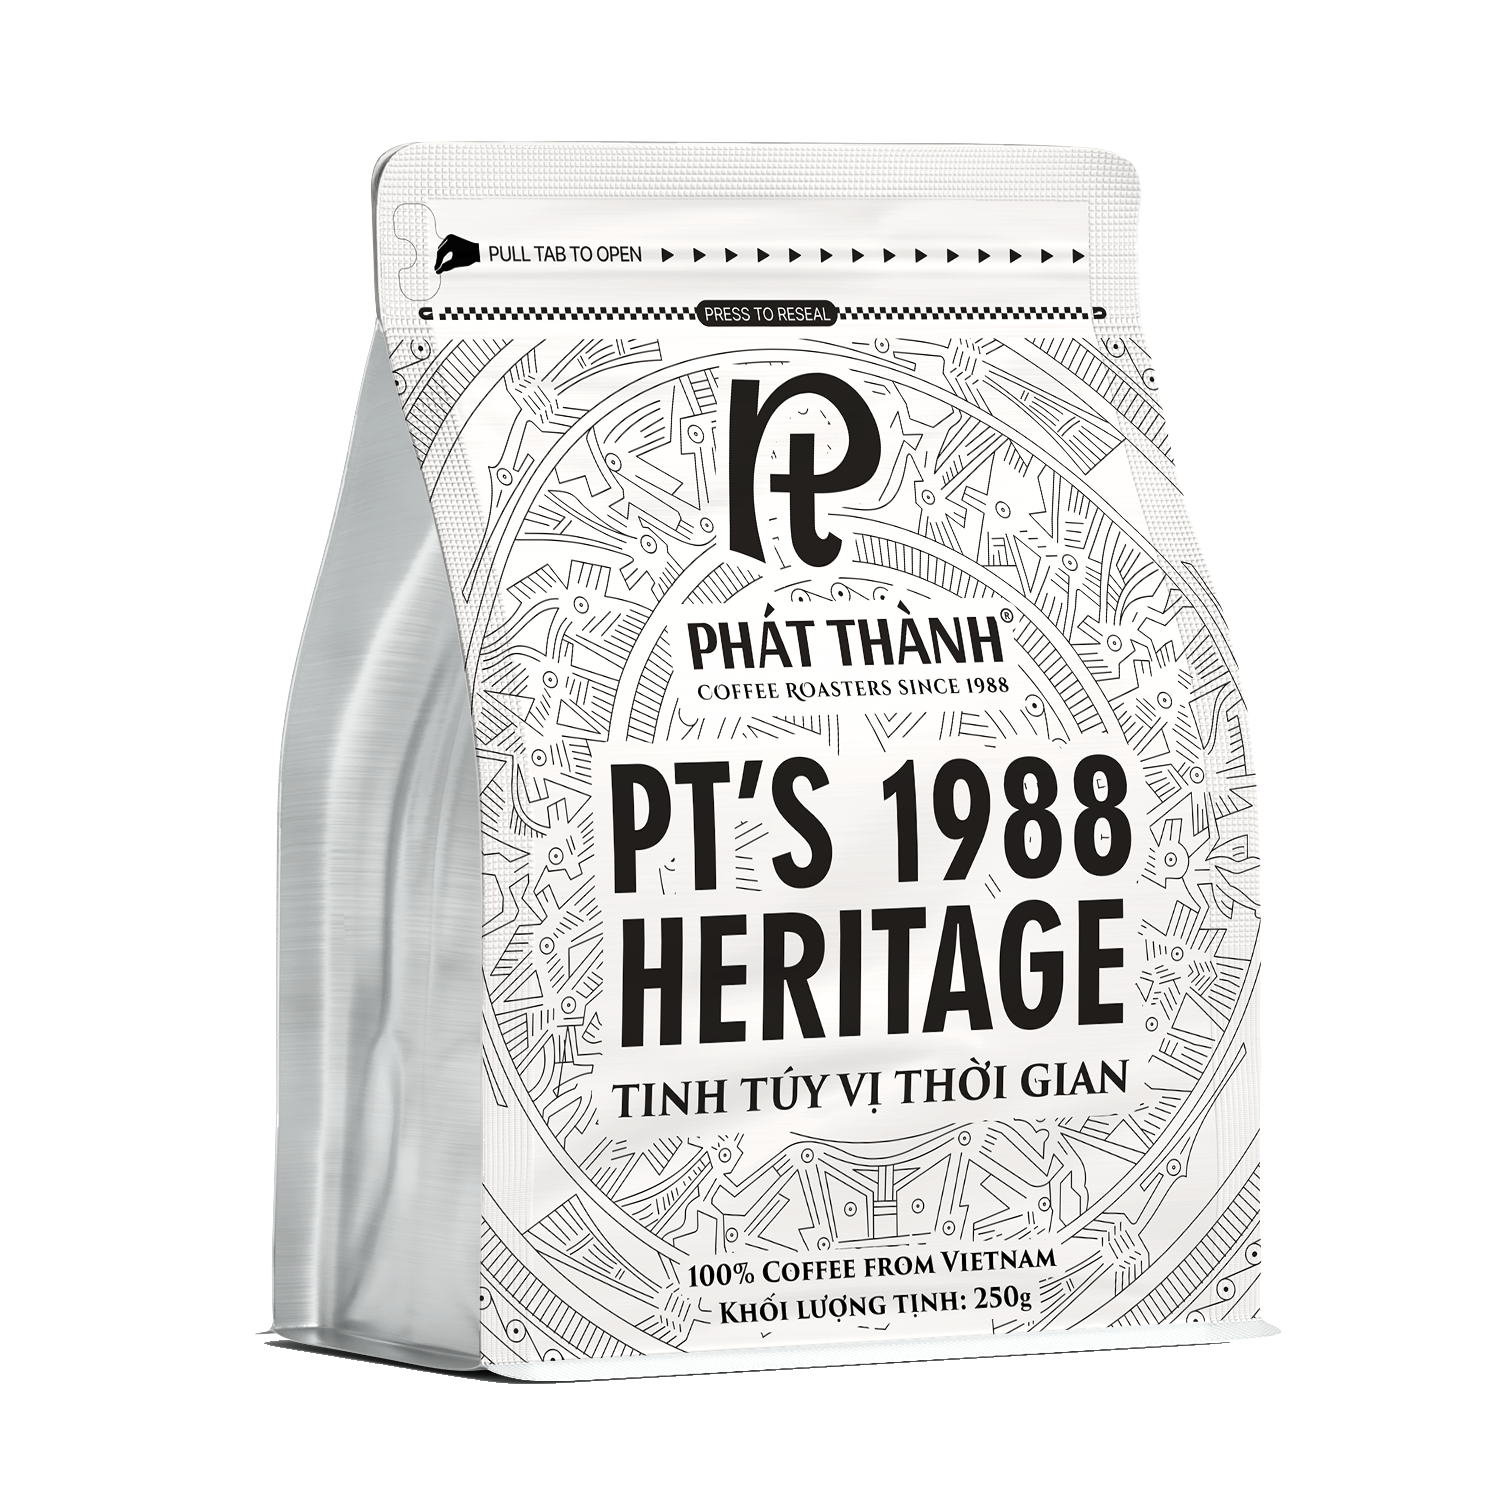 PT's 1988 Heritage PC2